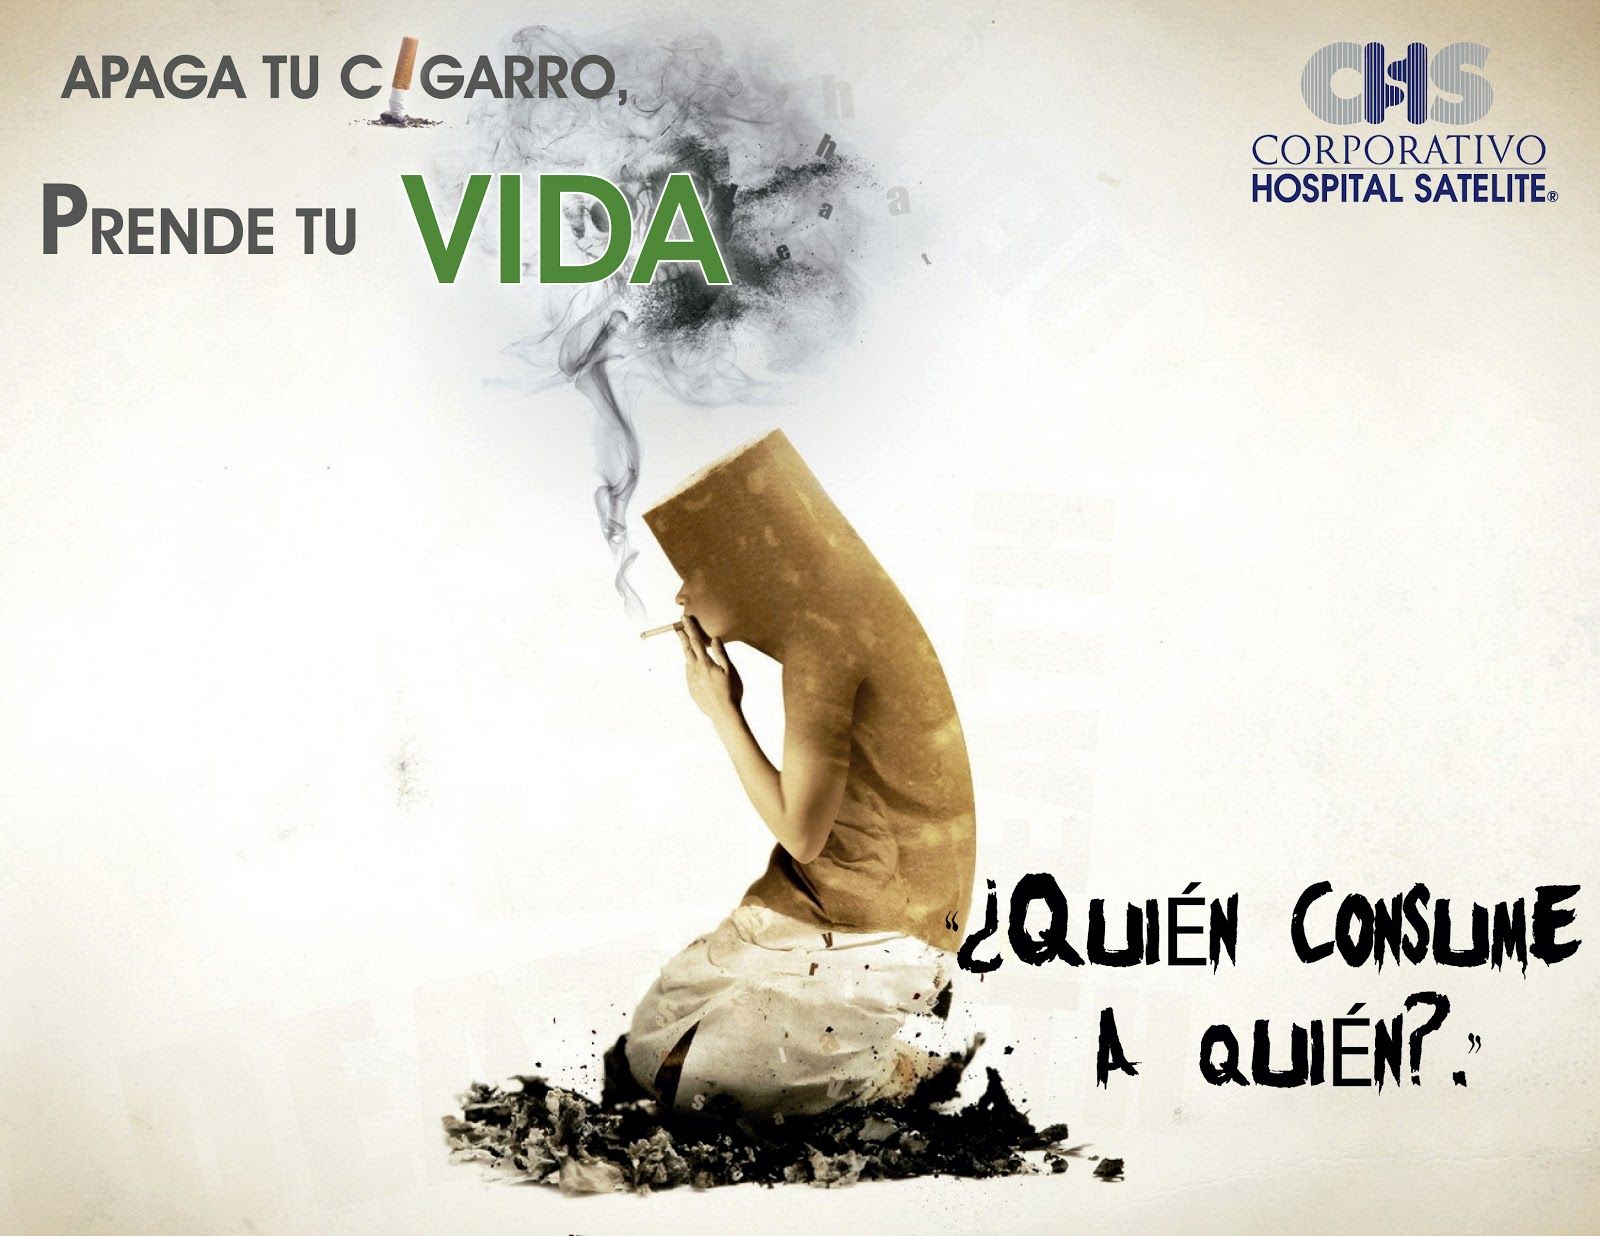 Día Mundial sin tabaco